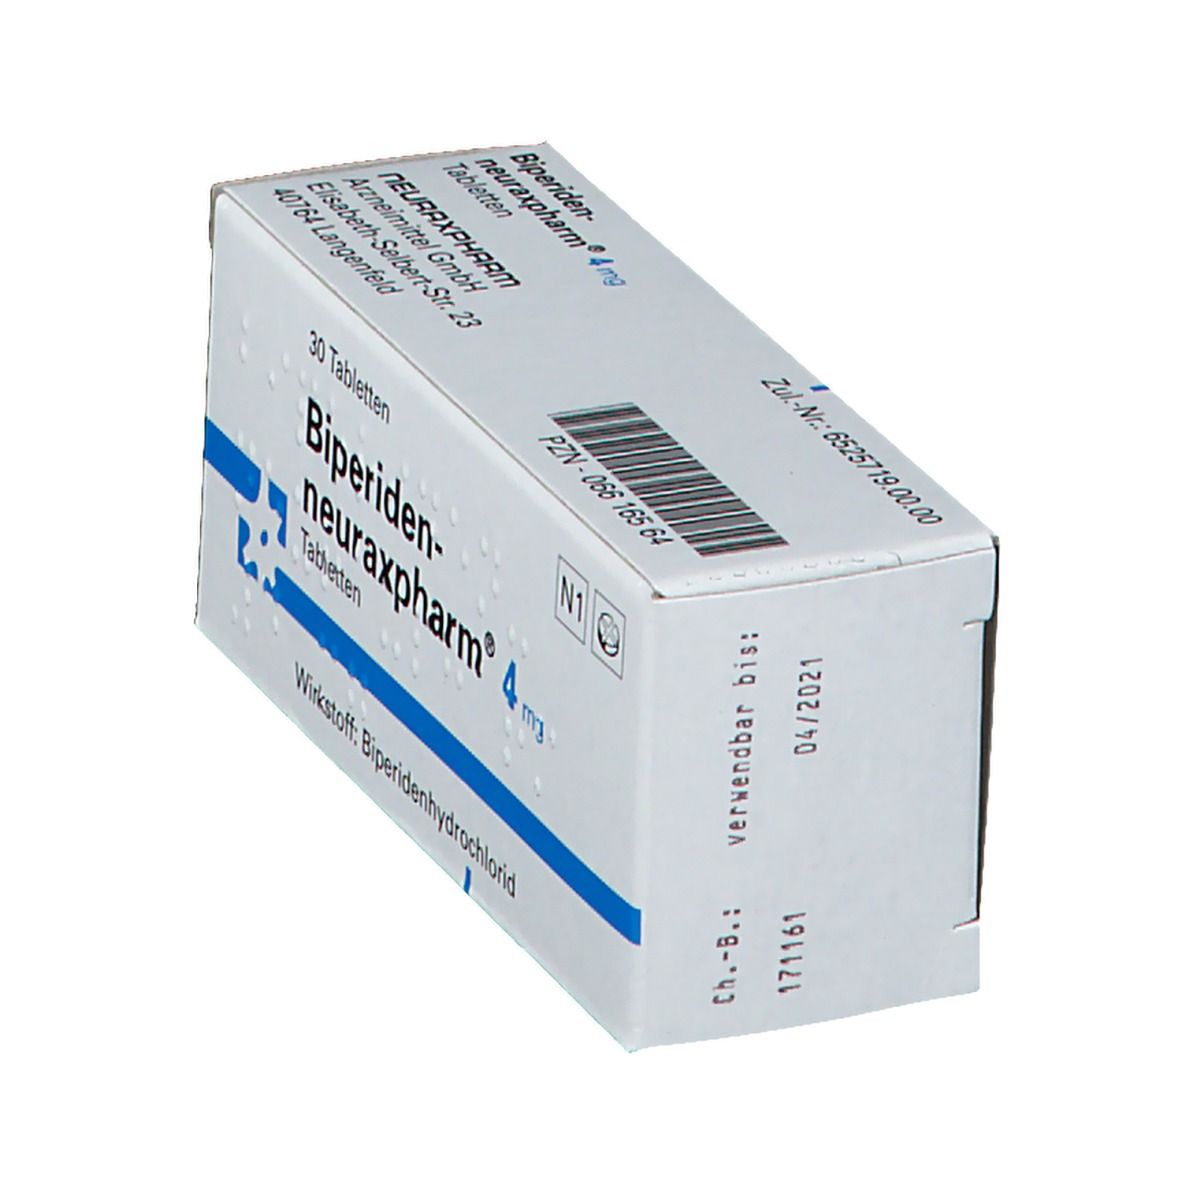 Biperiden-neuraxpharm® 4 mg